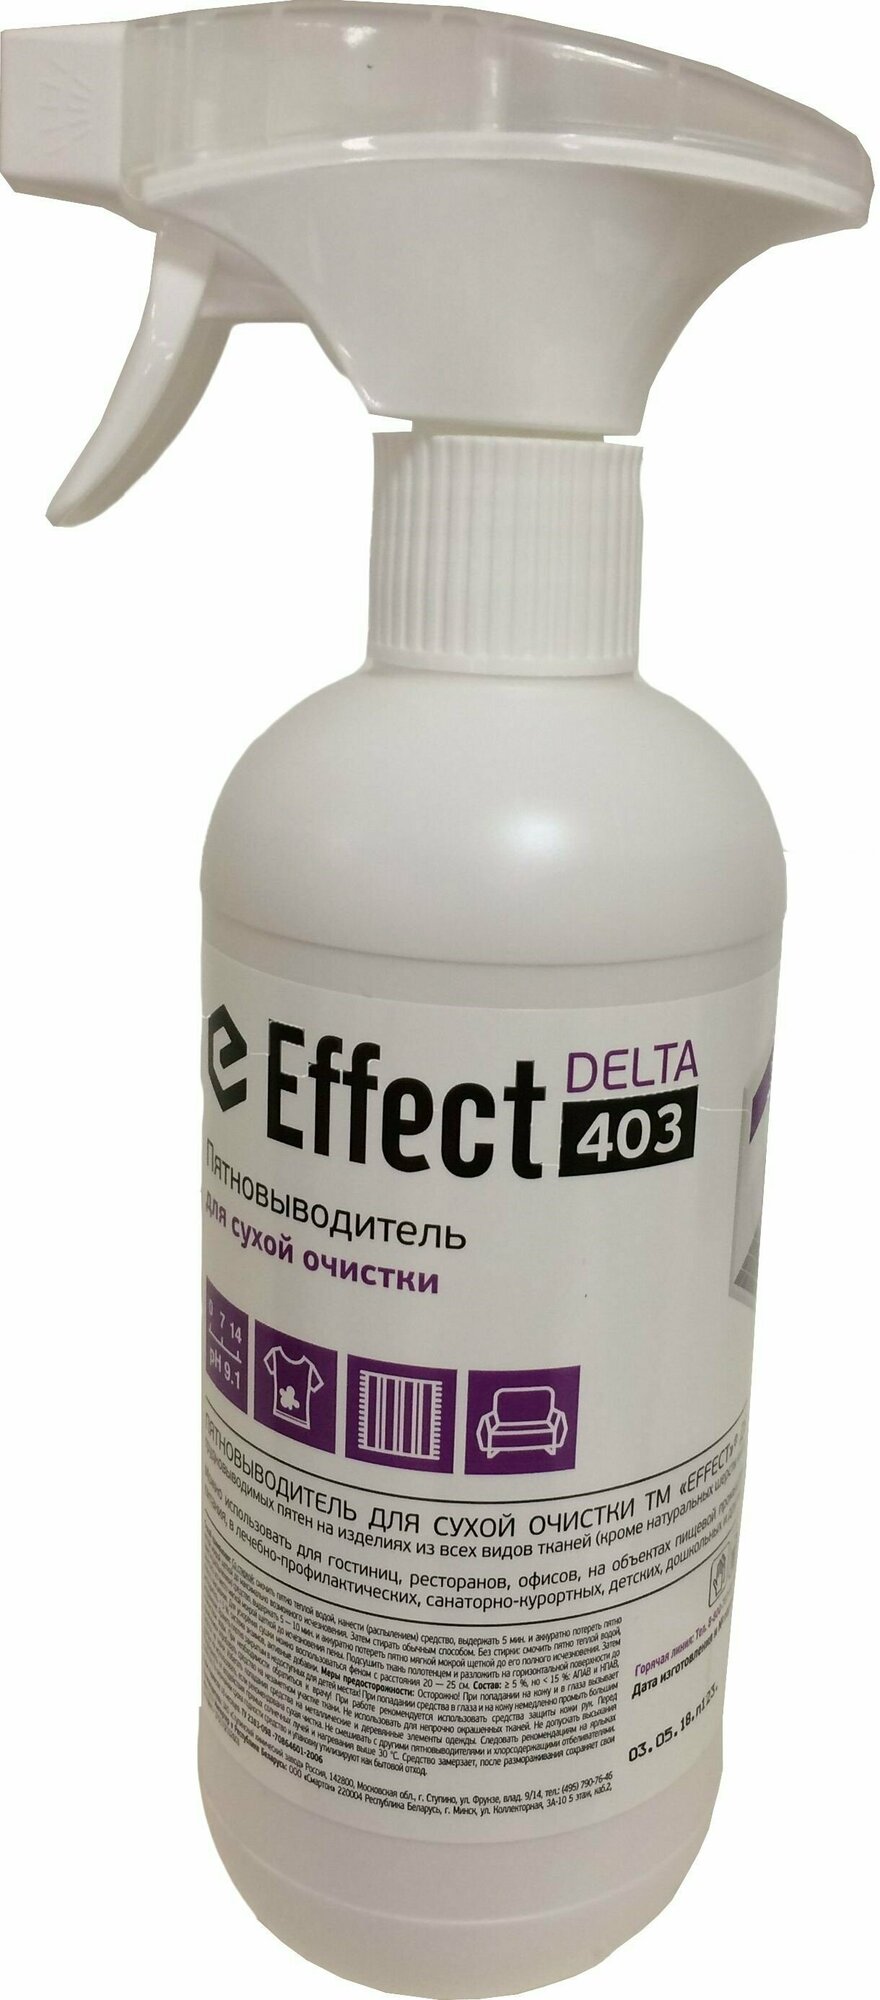 Пятновыводитель для сухой очистки Effect ALFA DELTA 403 500 мл